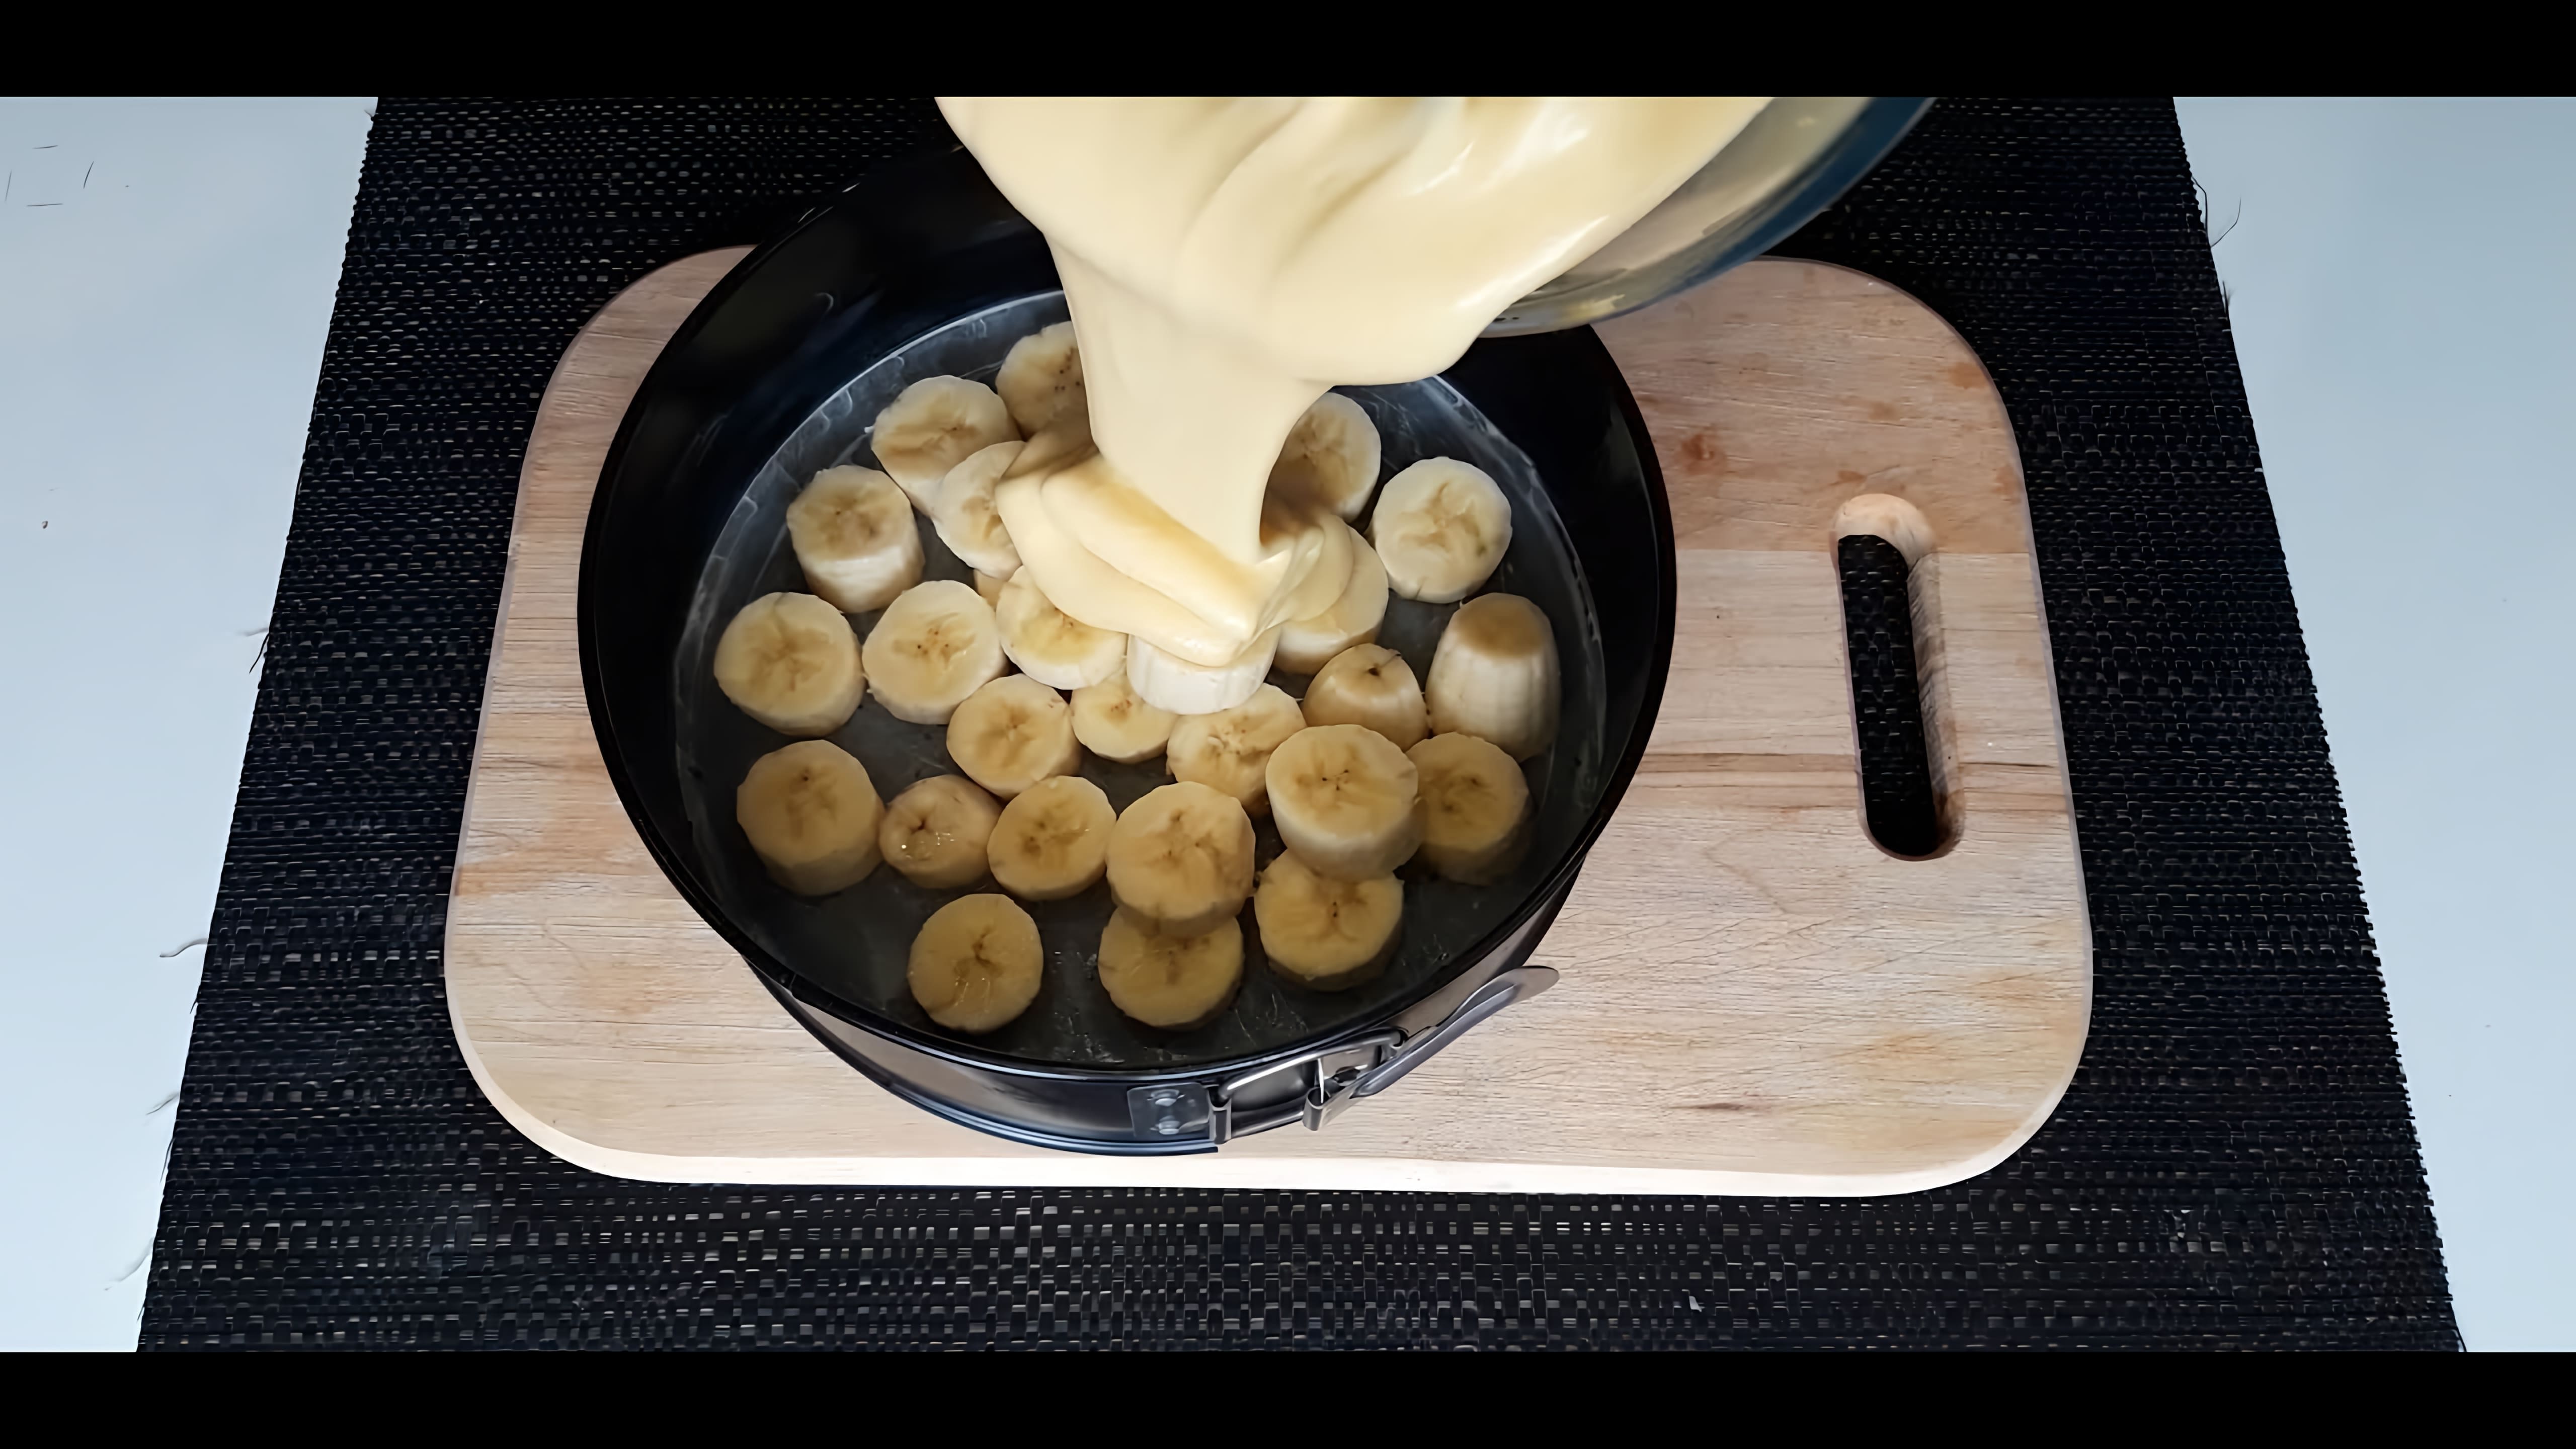 "Простой и вкусный банановый пирог за 5 минут/ готовим дома/все хотят добавки" - это видео-ролик, который демонстрирует процесс приготовления бананового пирога в домашних условиях